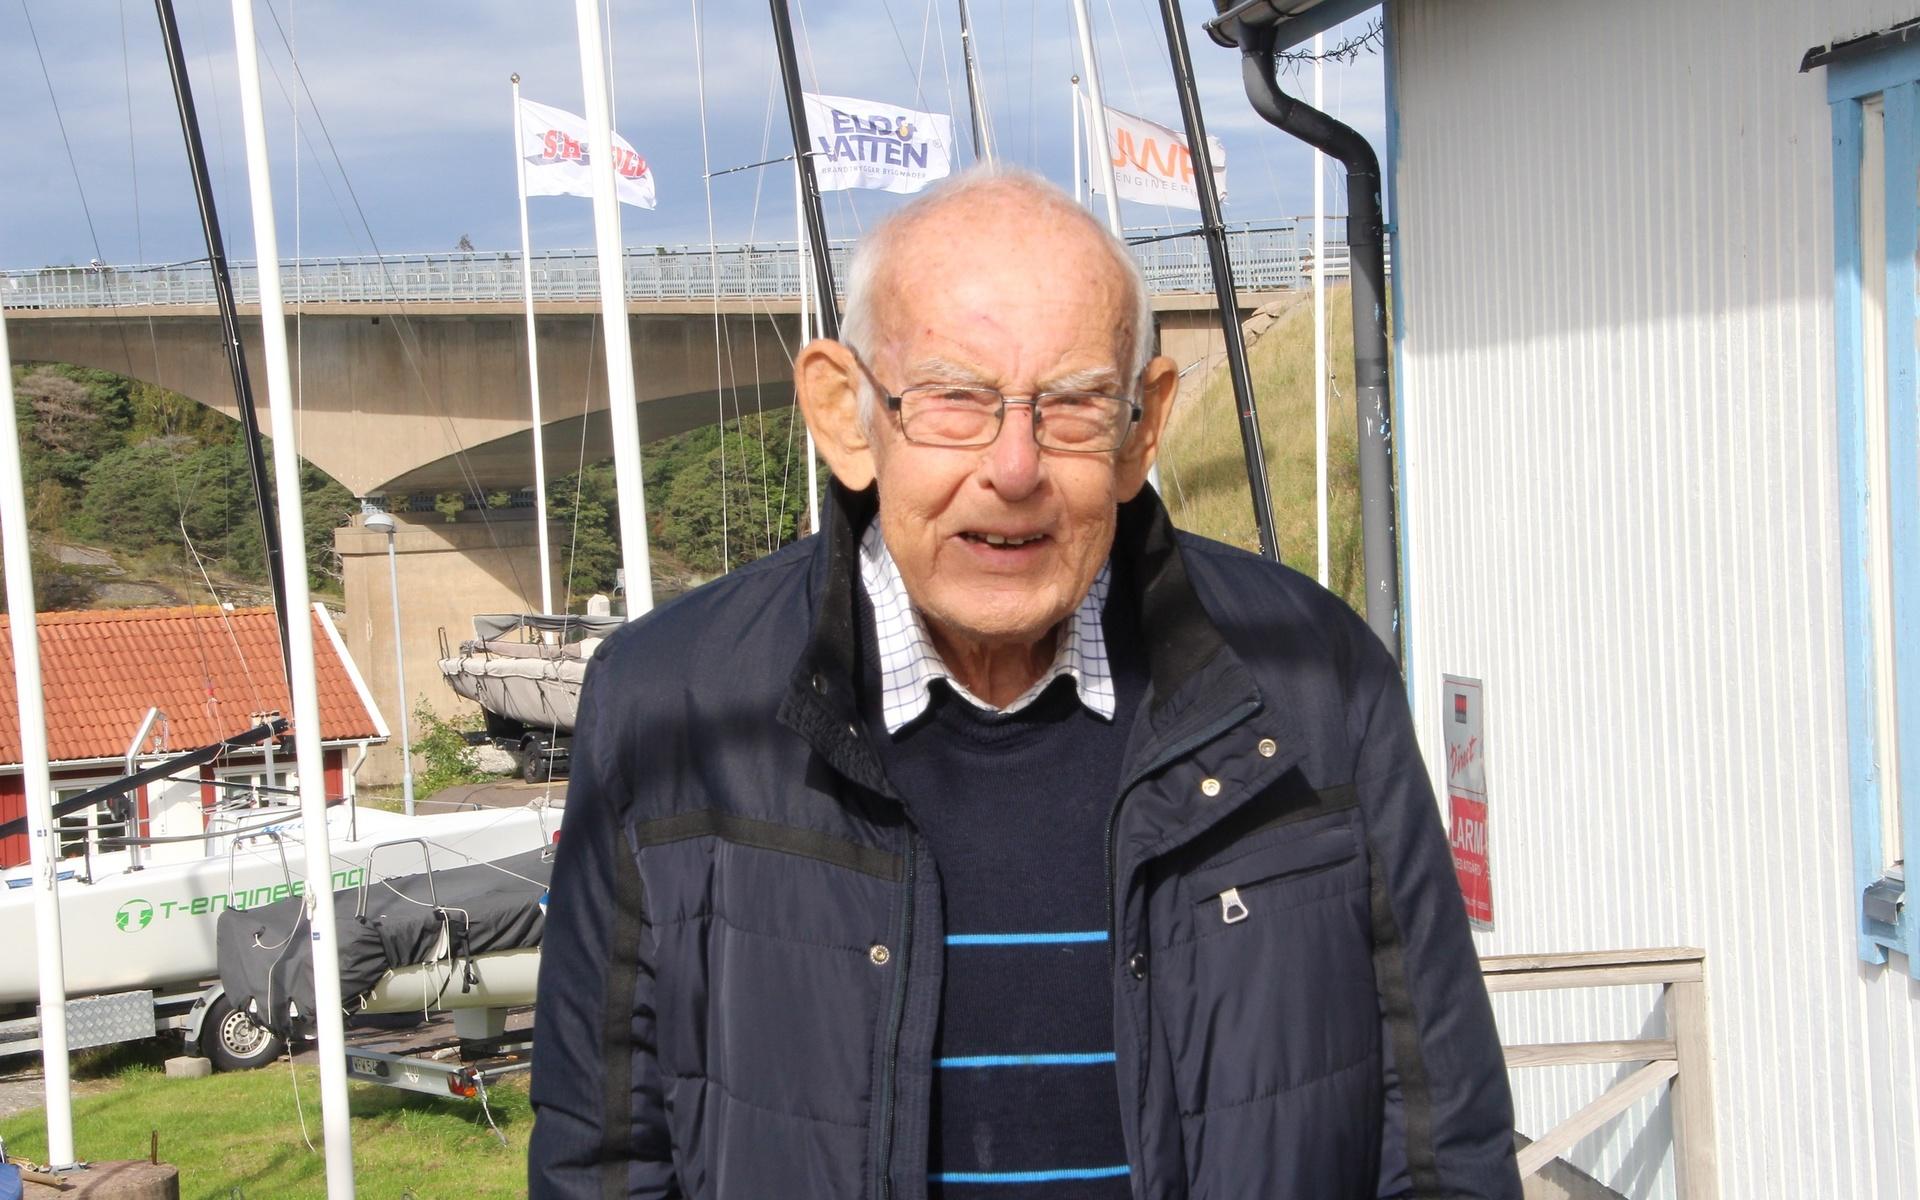 Den idag 82-årige Lars Berglund har i många år lett Tjörn Runt-seglingarna som är en av landets främsta seglingsarrangemang.